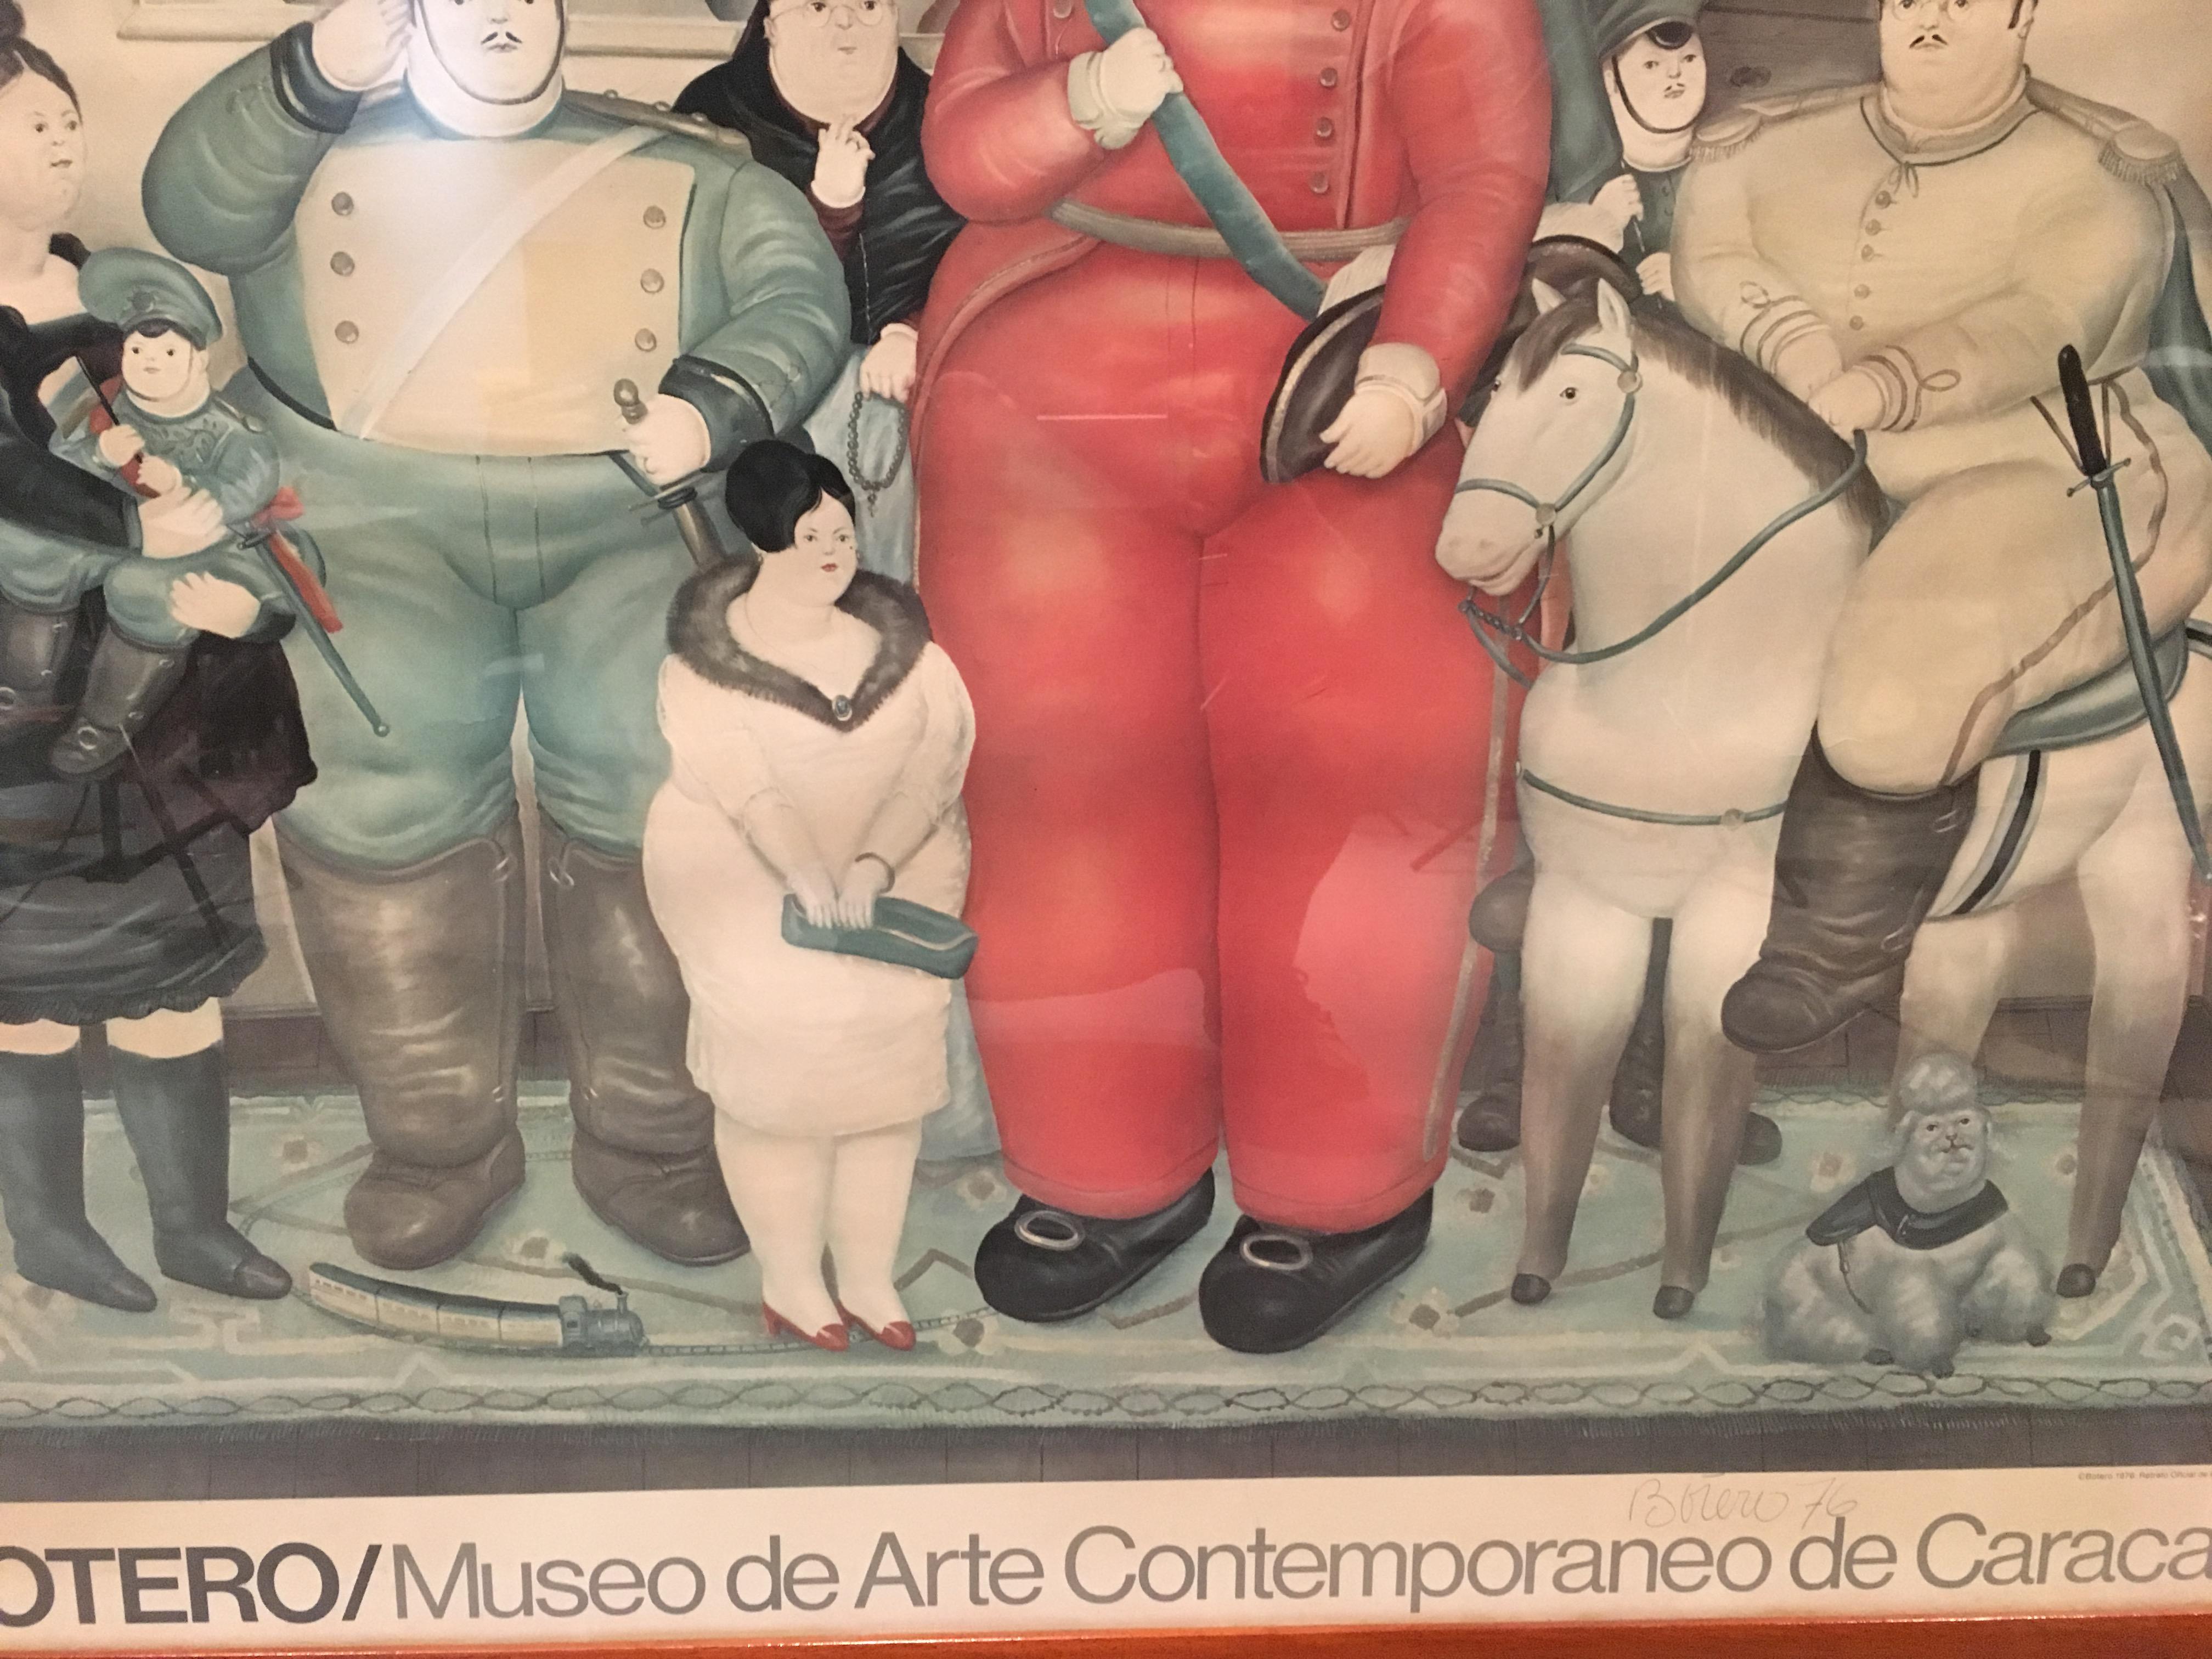 Venezuelan Fernando Botero Exhibition Poster For Sale